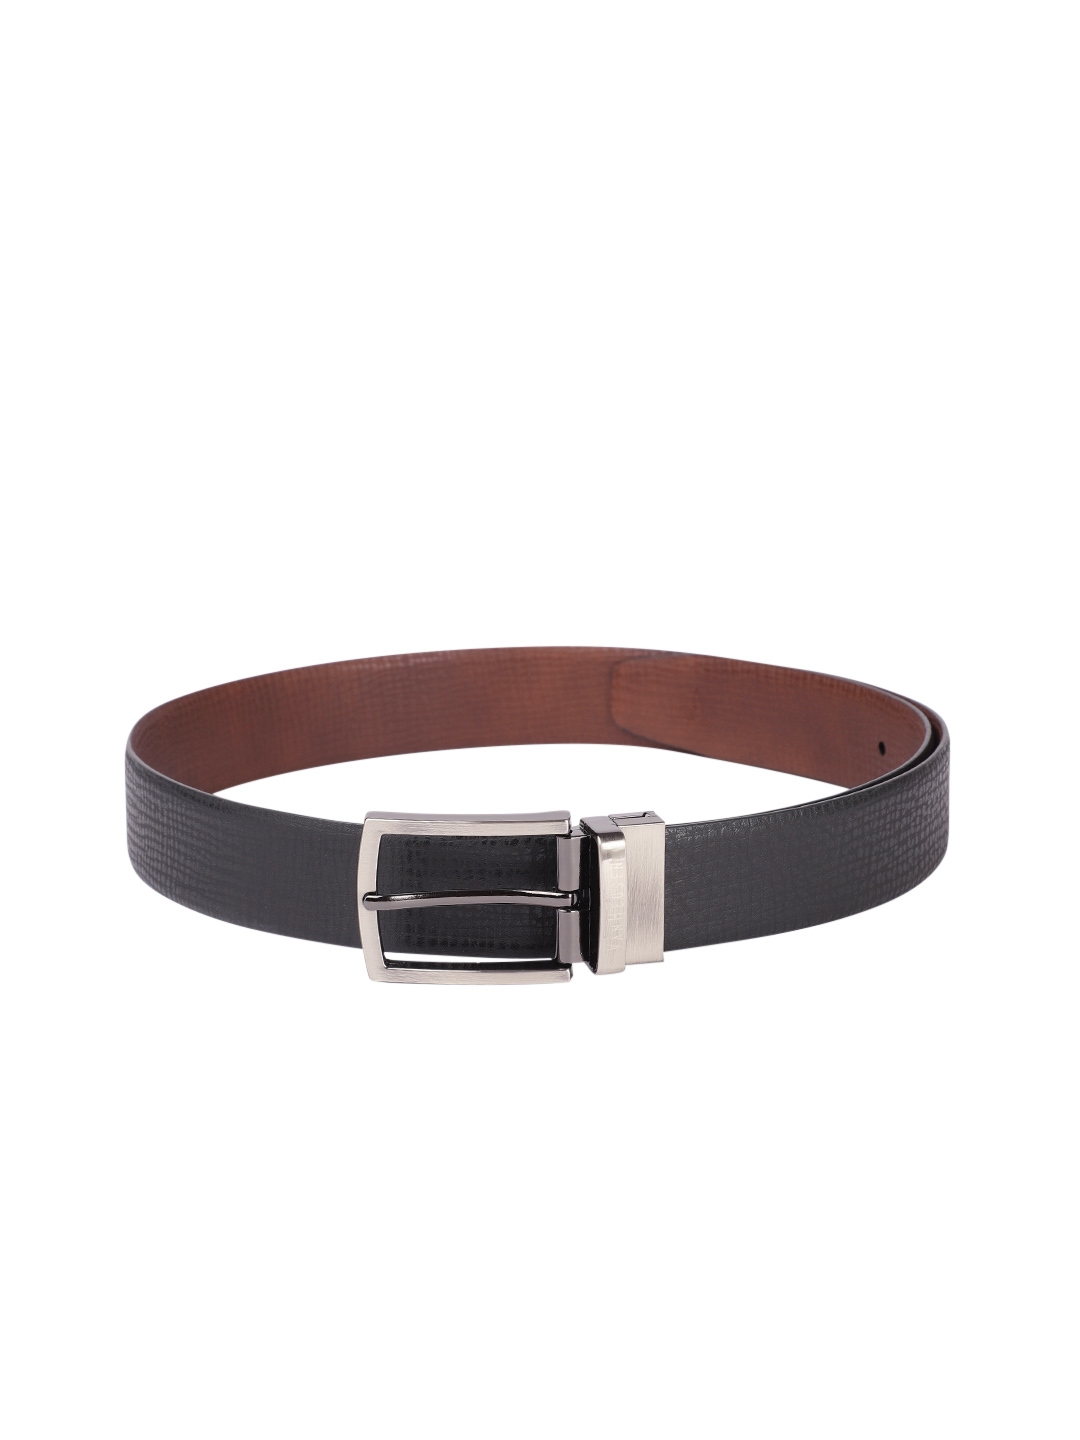 Buy Van Heusen Men Black Leather Formal Belt - Belts for Men 19428974 ...